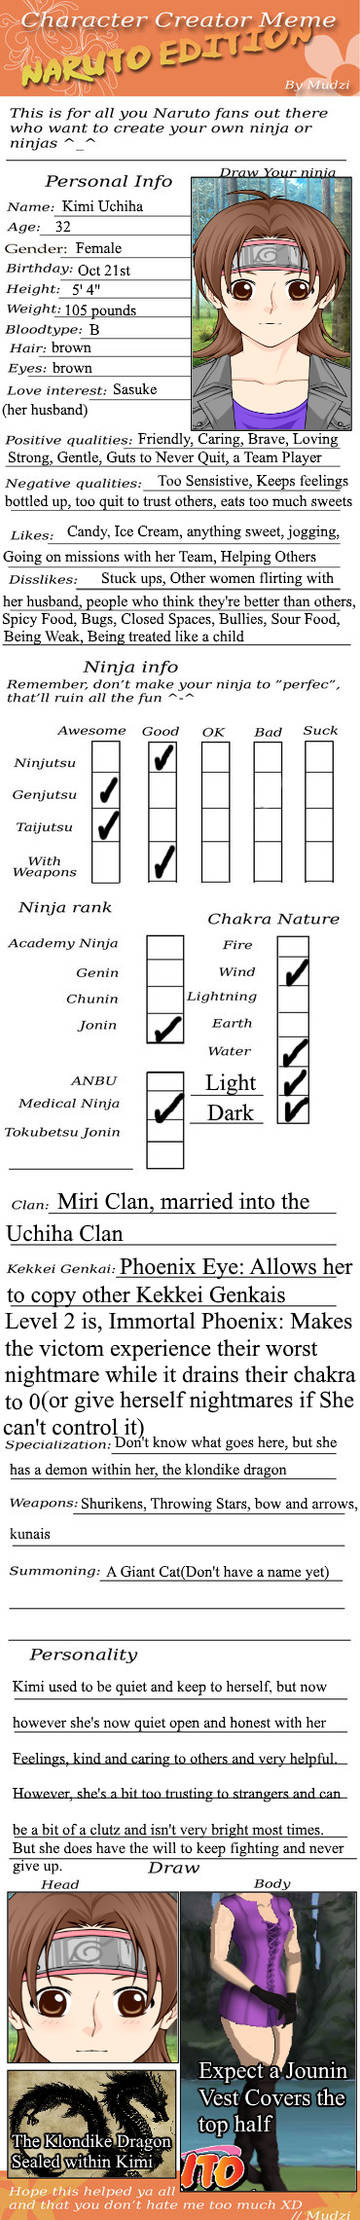 Naruto Gaiden: Kimi Uchiha's Bio